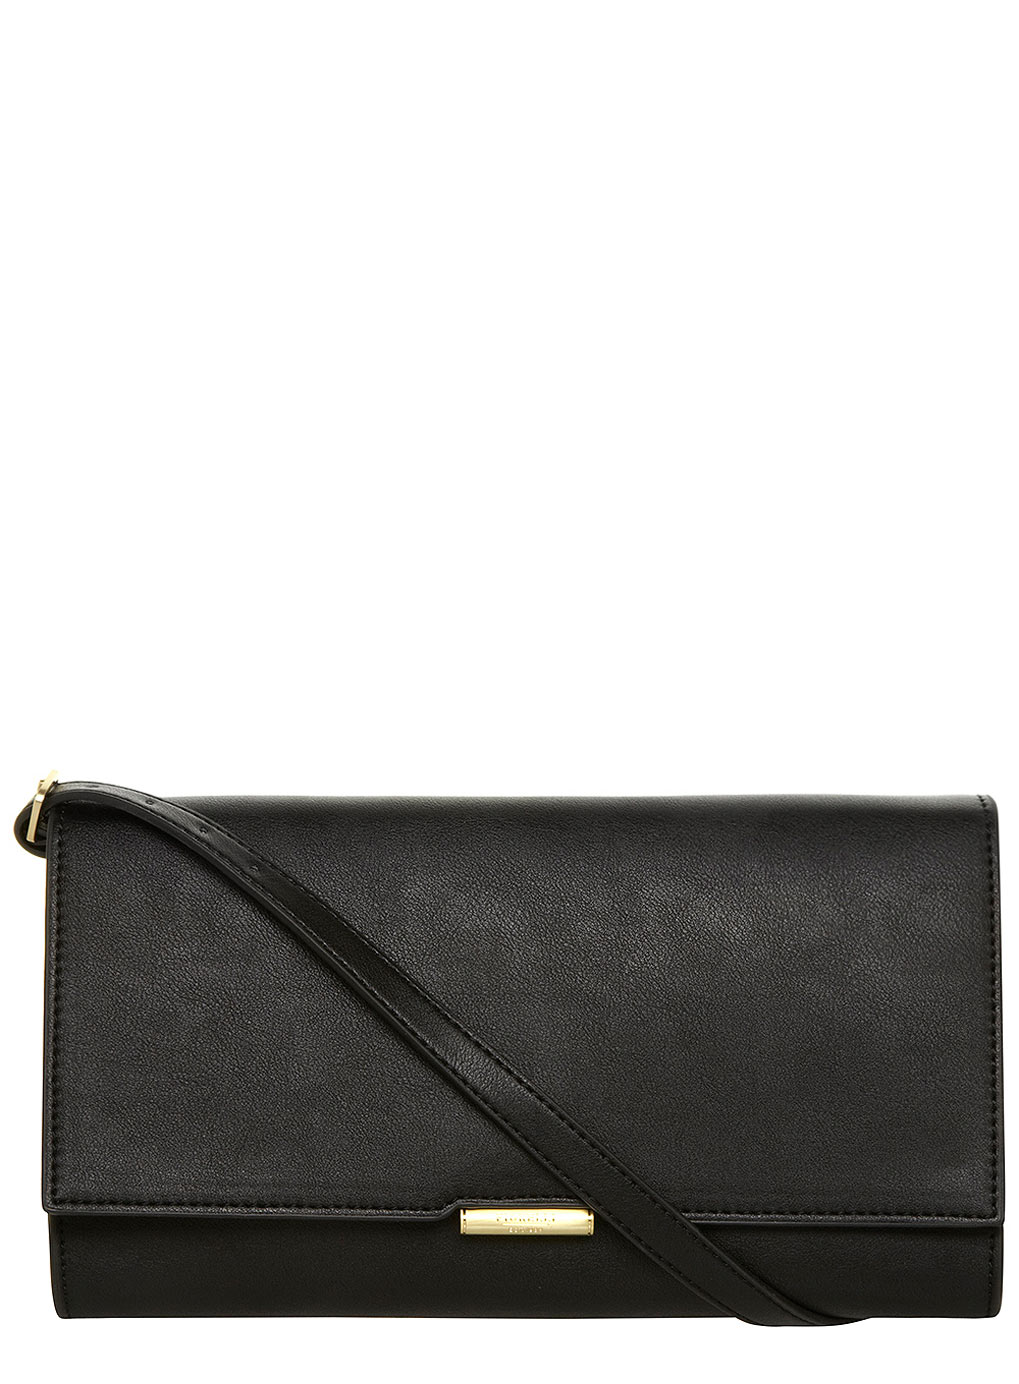 Fiorelli Black and leopard clutch bag 18341471